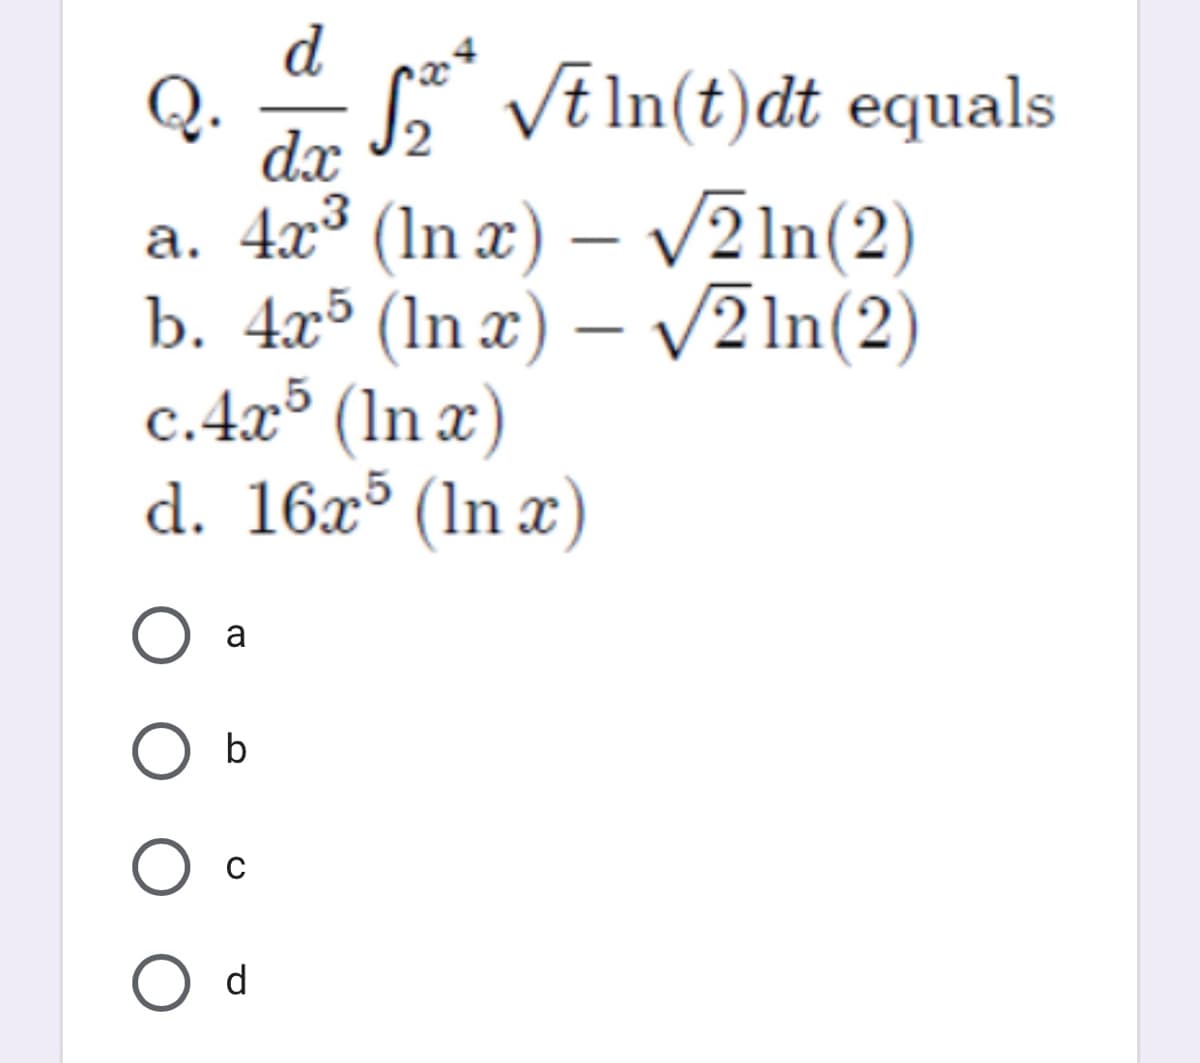 d
Q. - * Vē In(t)dt equals
dx
a. 4x³ (In x) – V2 In(2)
b. 4x³ (In x) – V2 In(2)
c.4x³ (In x)
d. 16x³ (ln x)
|
O a
d
